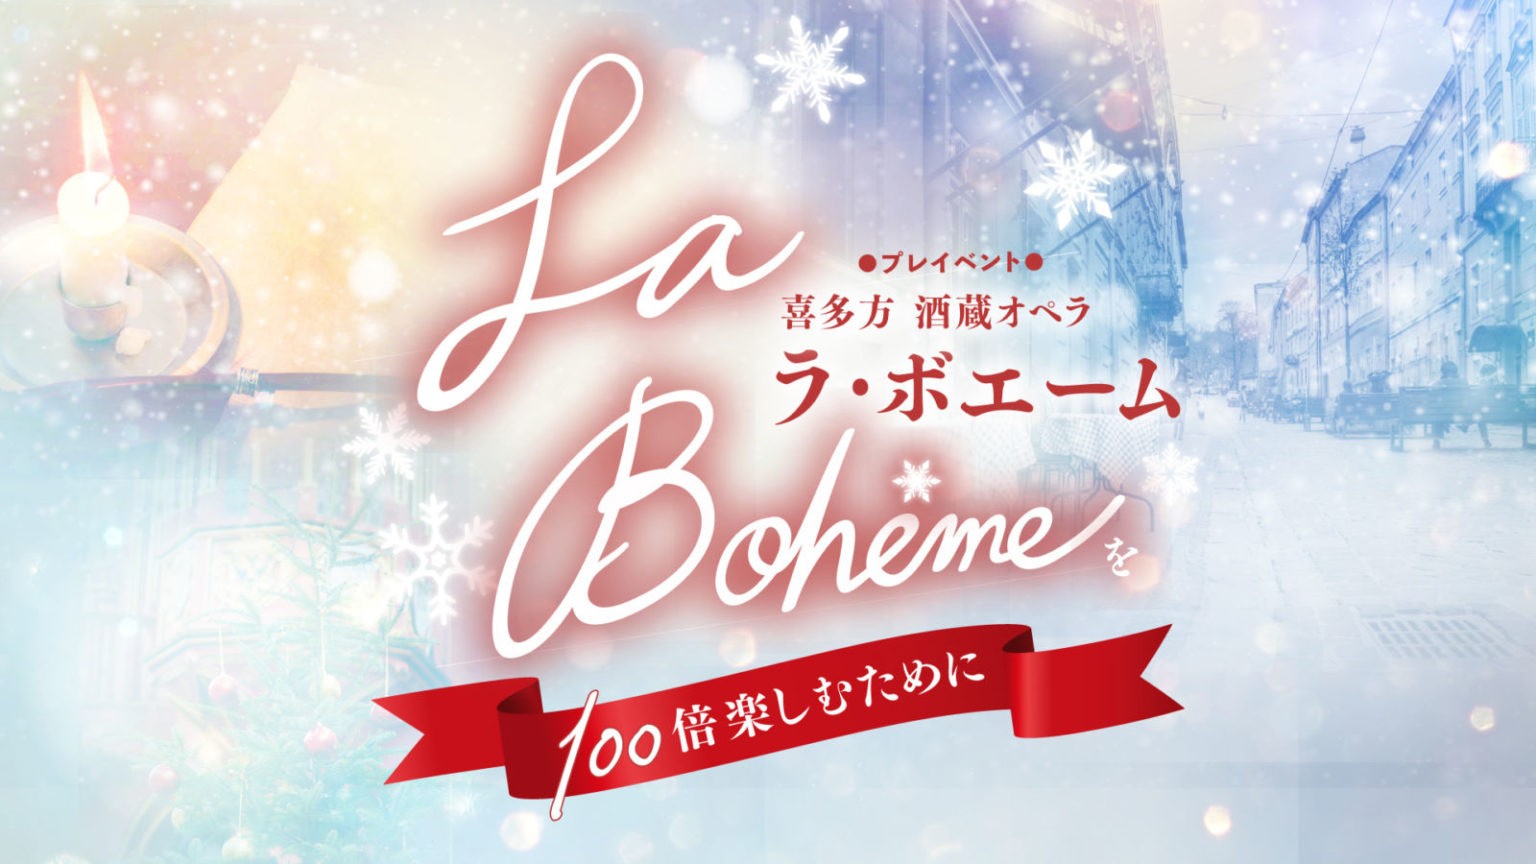 【当日券情報】喜多方酒蔵オペラ「ラ・ボエーム」を100倍楽しむために